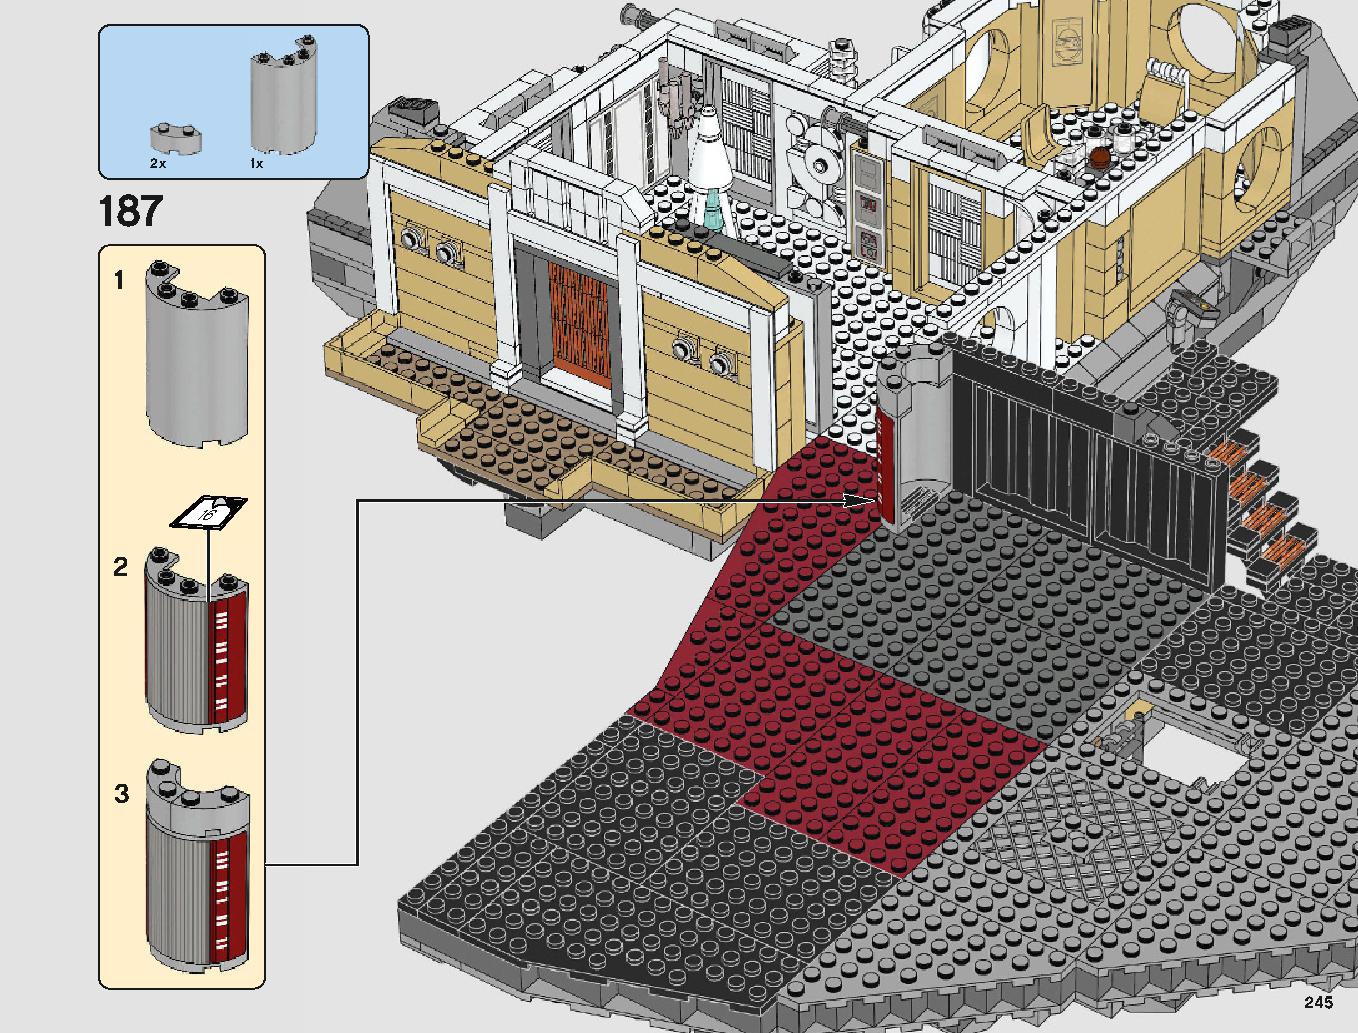 クラウド・シティ 75222 レゴの商品情報 レゴの説明書・組立方法 245 page